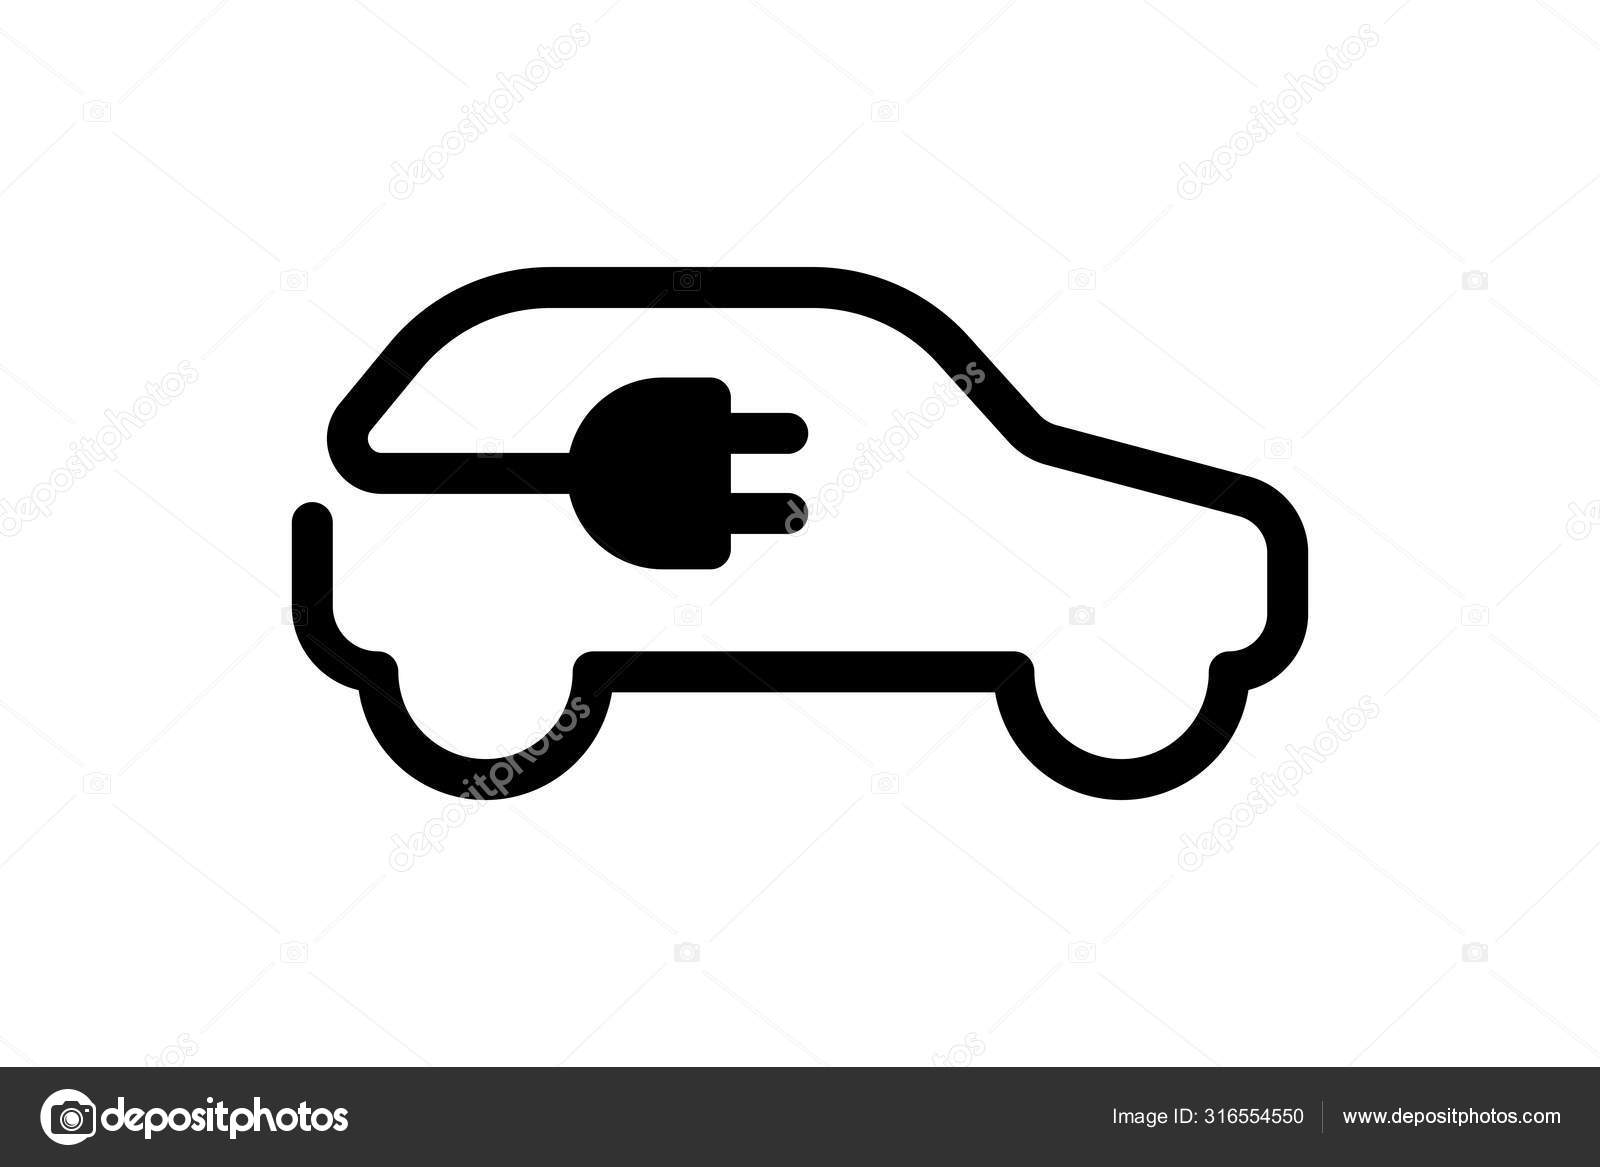 Elektroauto-Ikone. Elektroauto-Kabelstecker zum Aufladen schwarzes